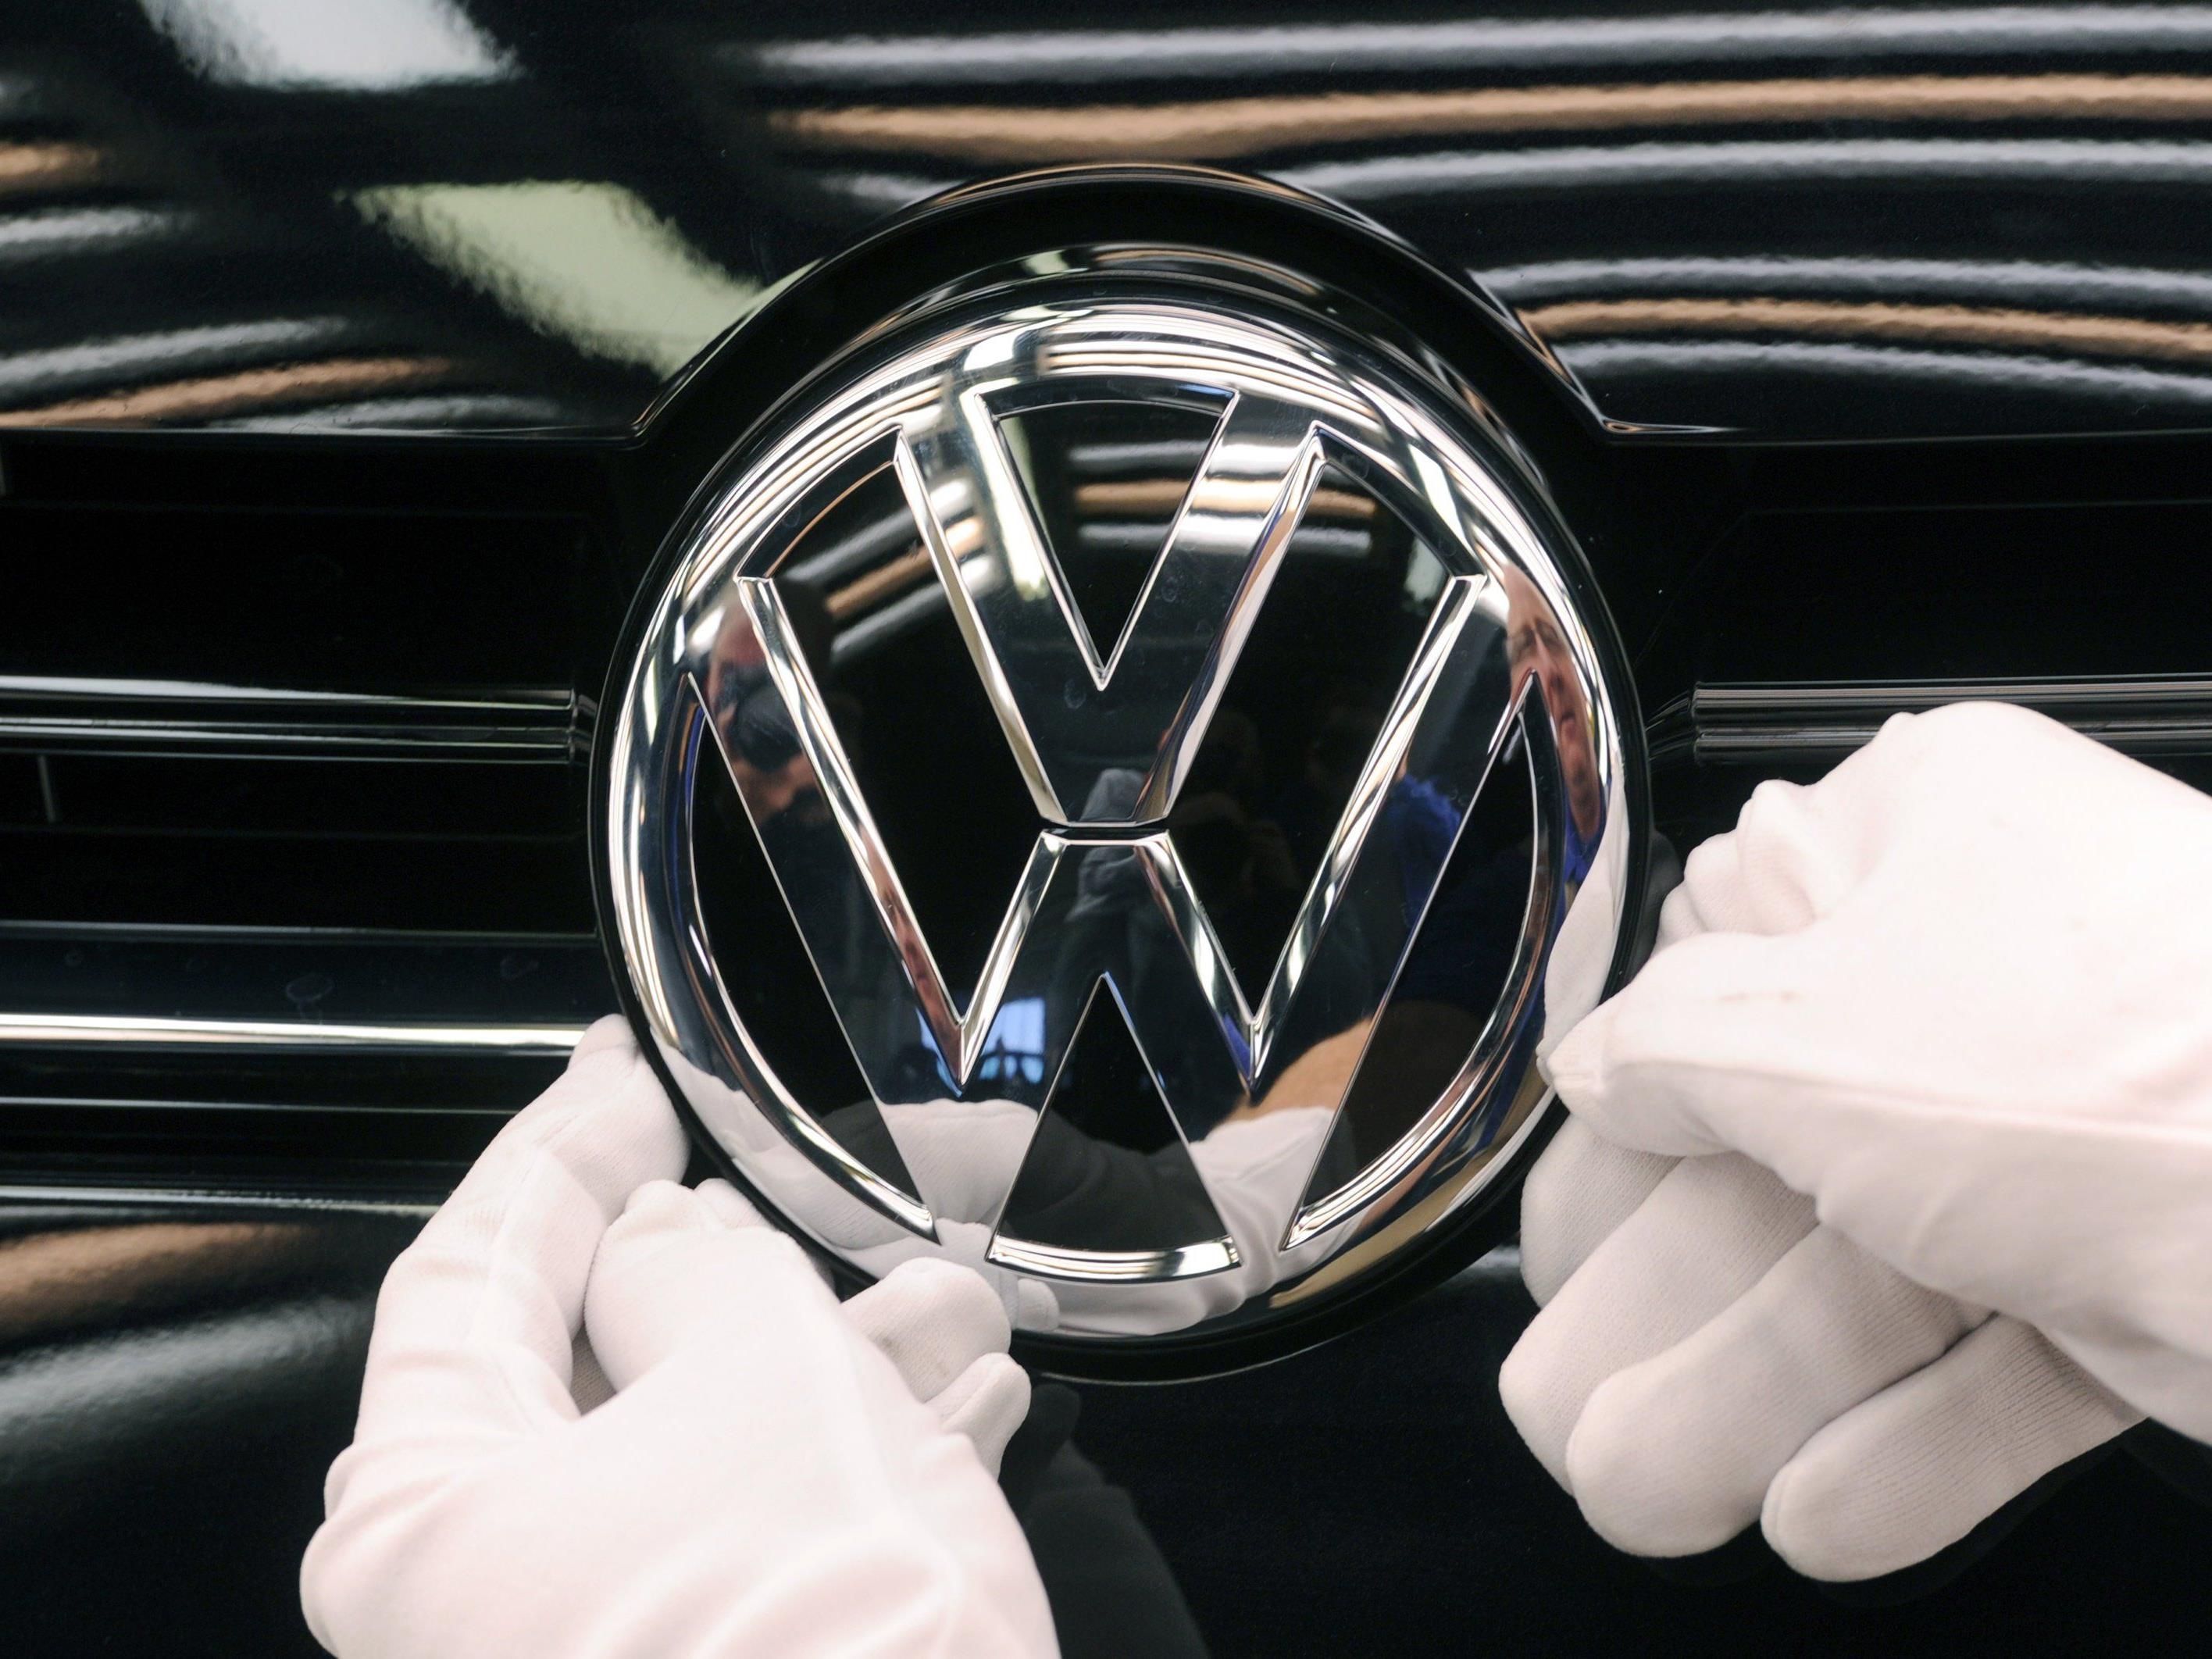 Abgasskandal bei VW: Weitere Überprüfungen in den USA und in Deutschland angekündigt